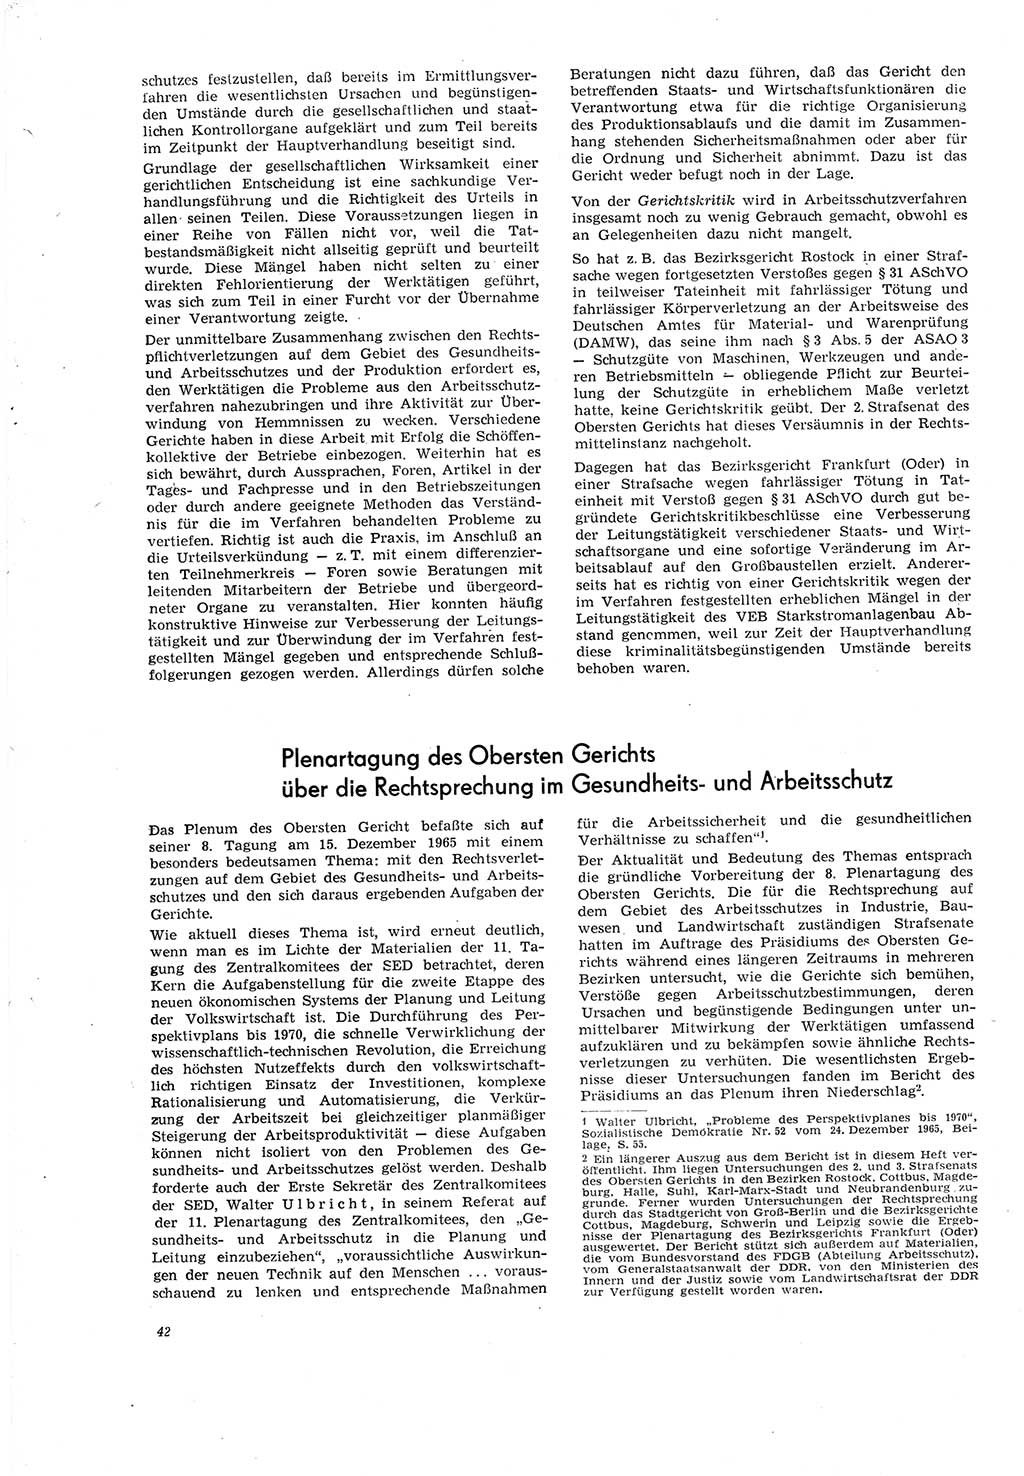 Neue Justiz (NJ), Zeitschrift für Recht und Rechtswissenschaft [Deutsche Demokratische Republik (DDR)], 20. Jahrgang 1966, Seite 42 (NJ DDR 1966, S. 42)